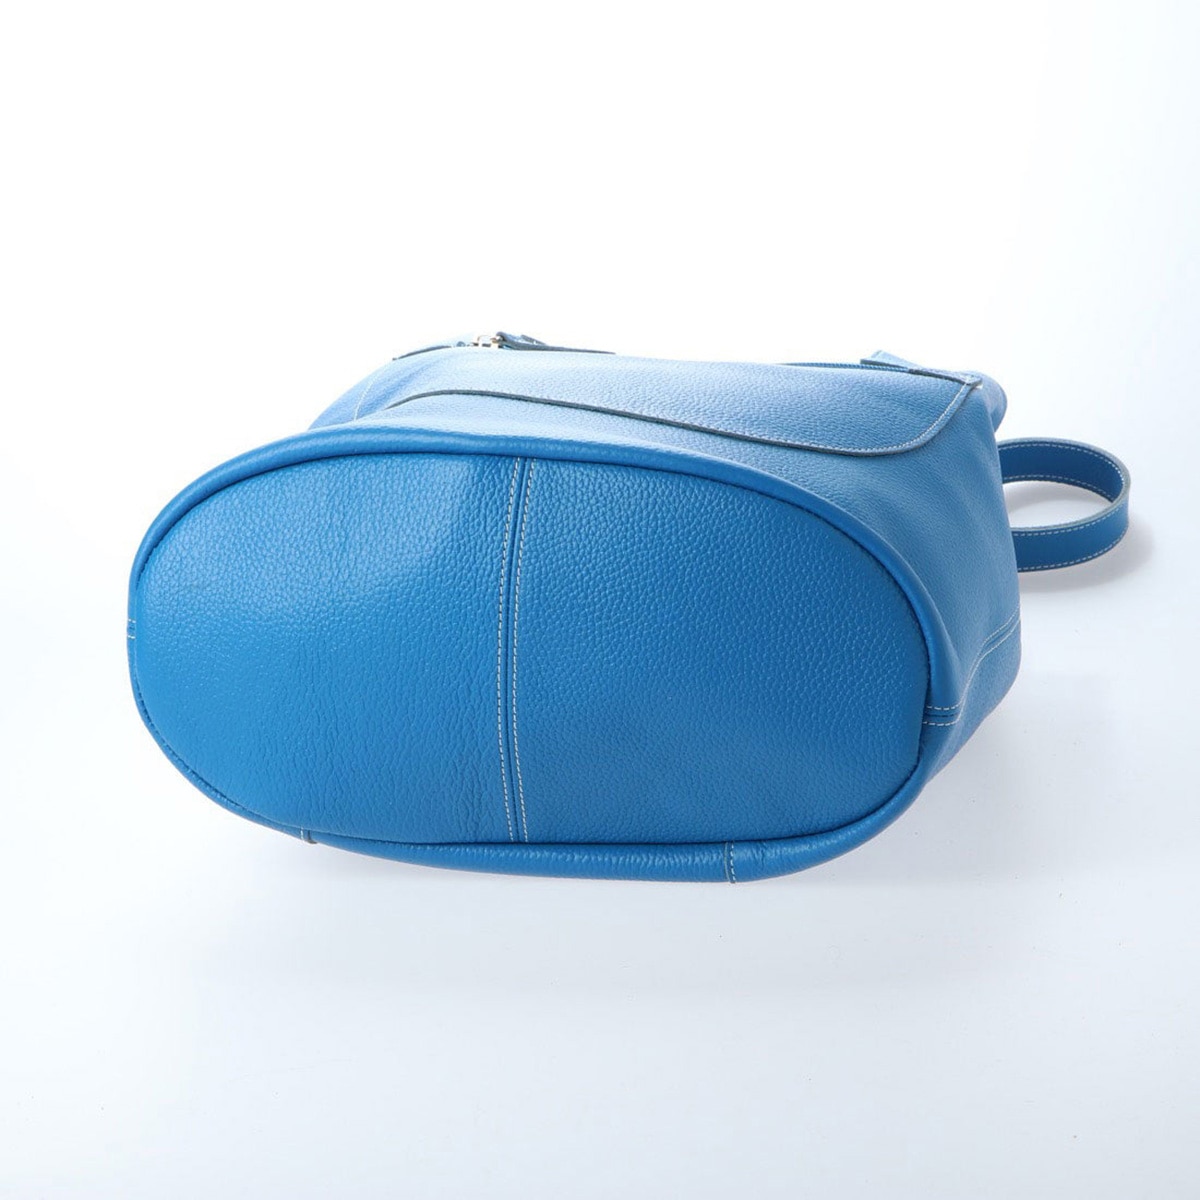 モデロ MODELLO 一枚革を使用した柔らかいトートバッグ DMLB102 BLUE FREE